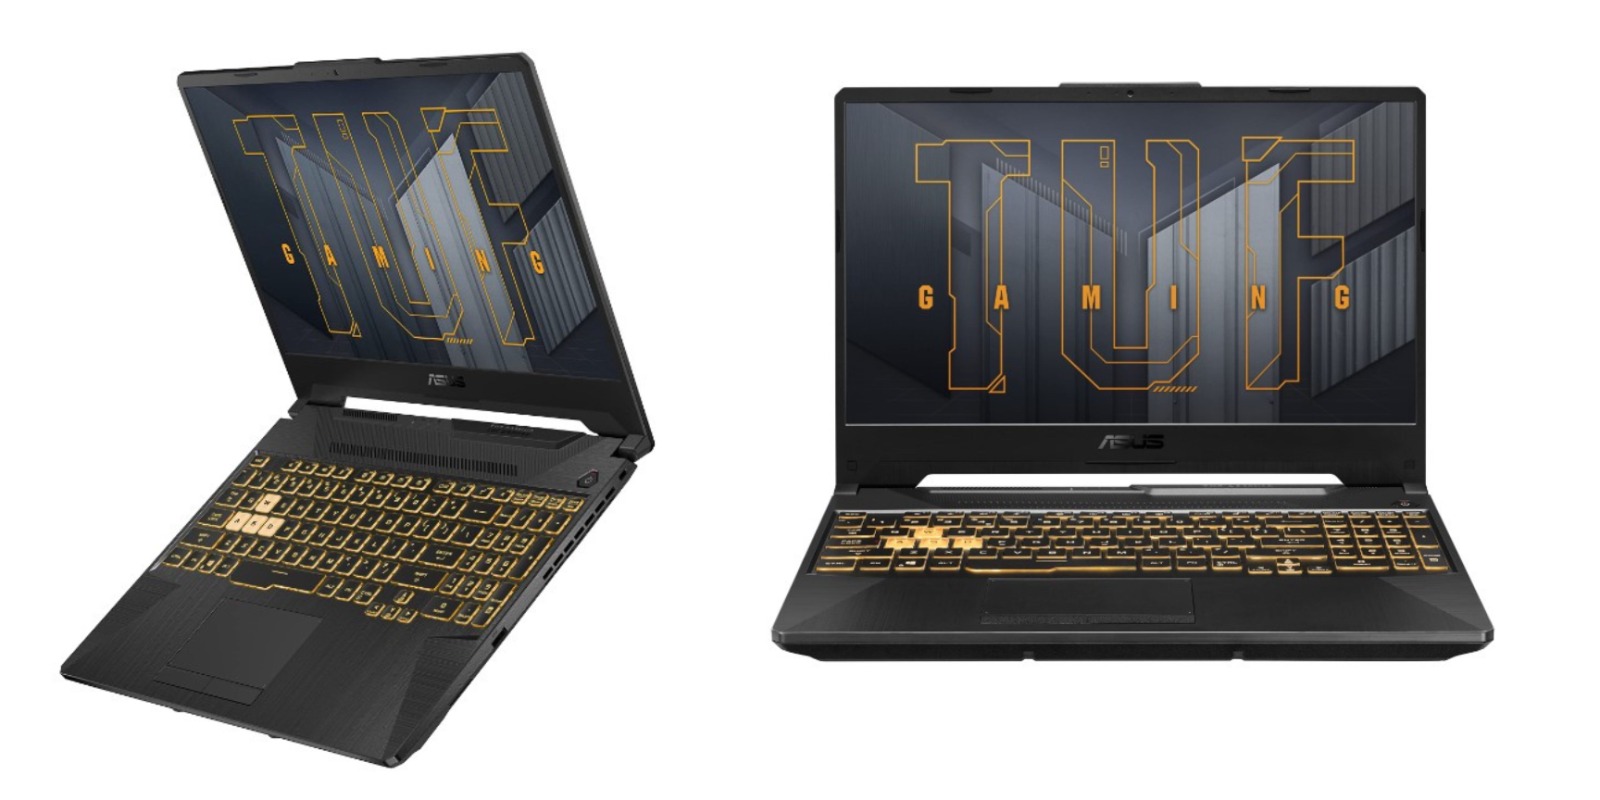 ASUS TUF F15 Laptop Gaming Murah dari ASUS! Cek Harga dan Spesifikasi Disini